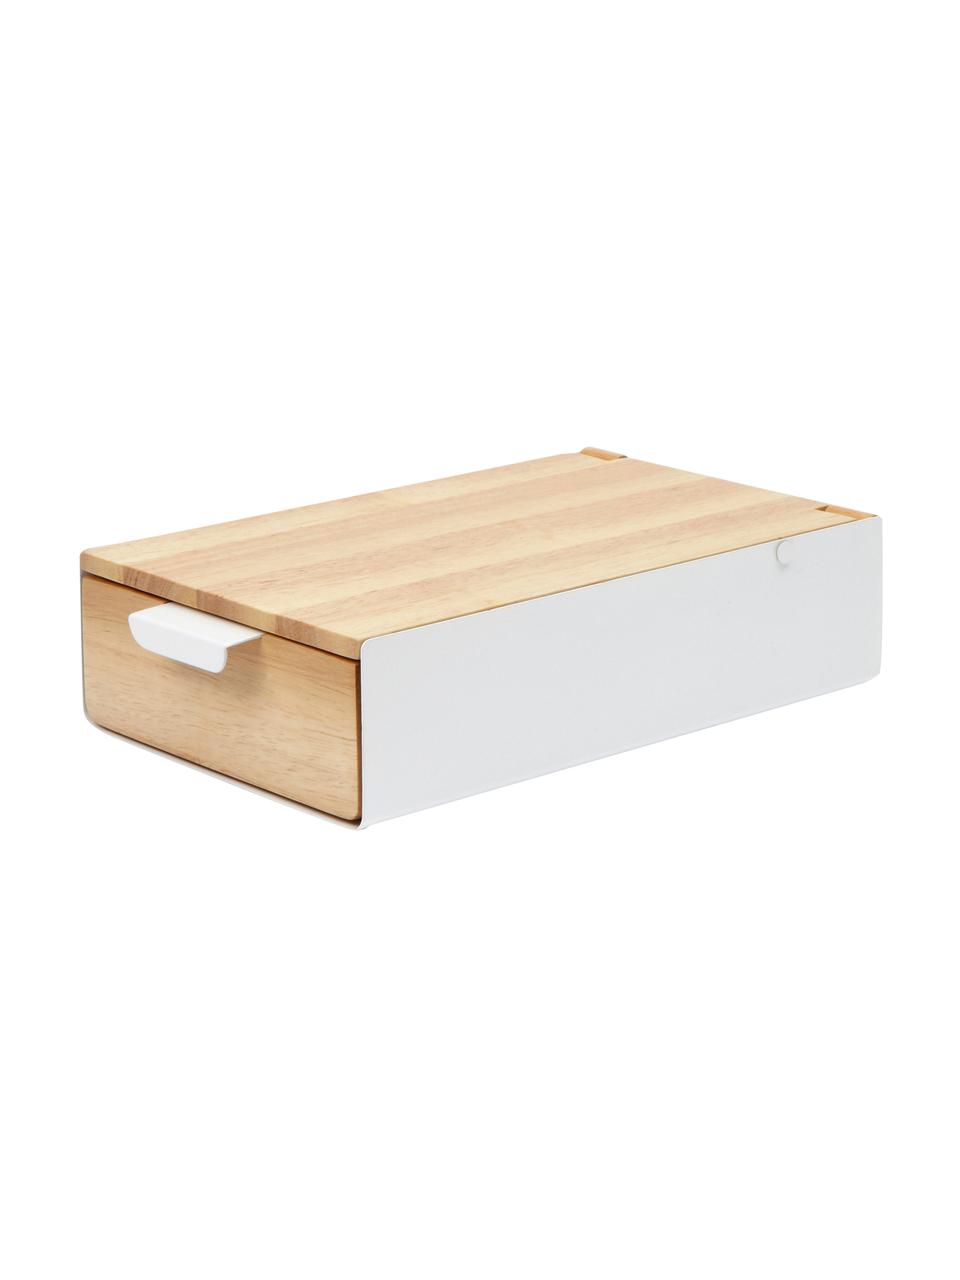 Schmuckbox Reflexion, Box: Metall, lackiert, Holz, Box: Weiß, Holz Innenfutter: Grau Deckel innen: Spiegelglas, 24 x 6 cm